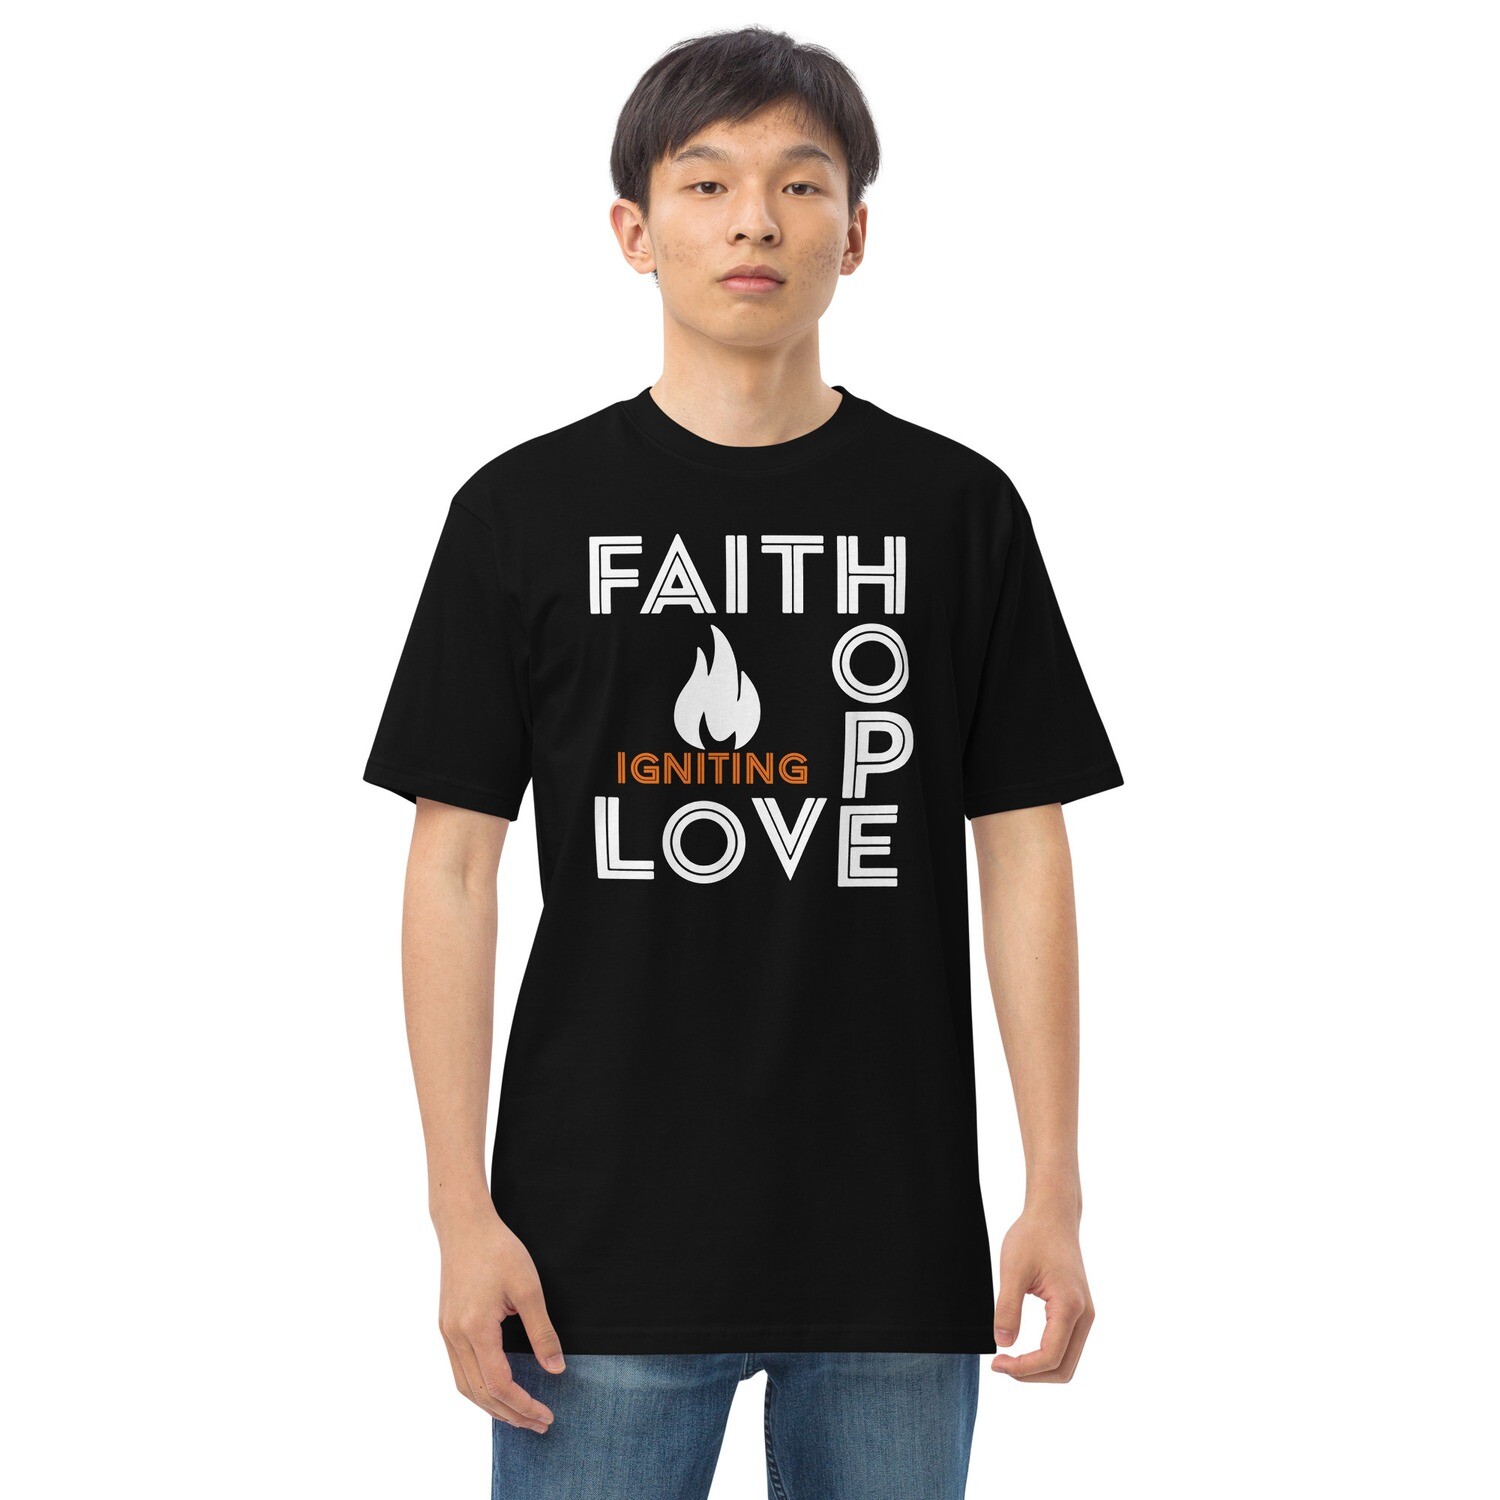 Faith Hope Love Tee